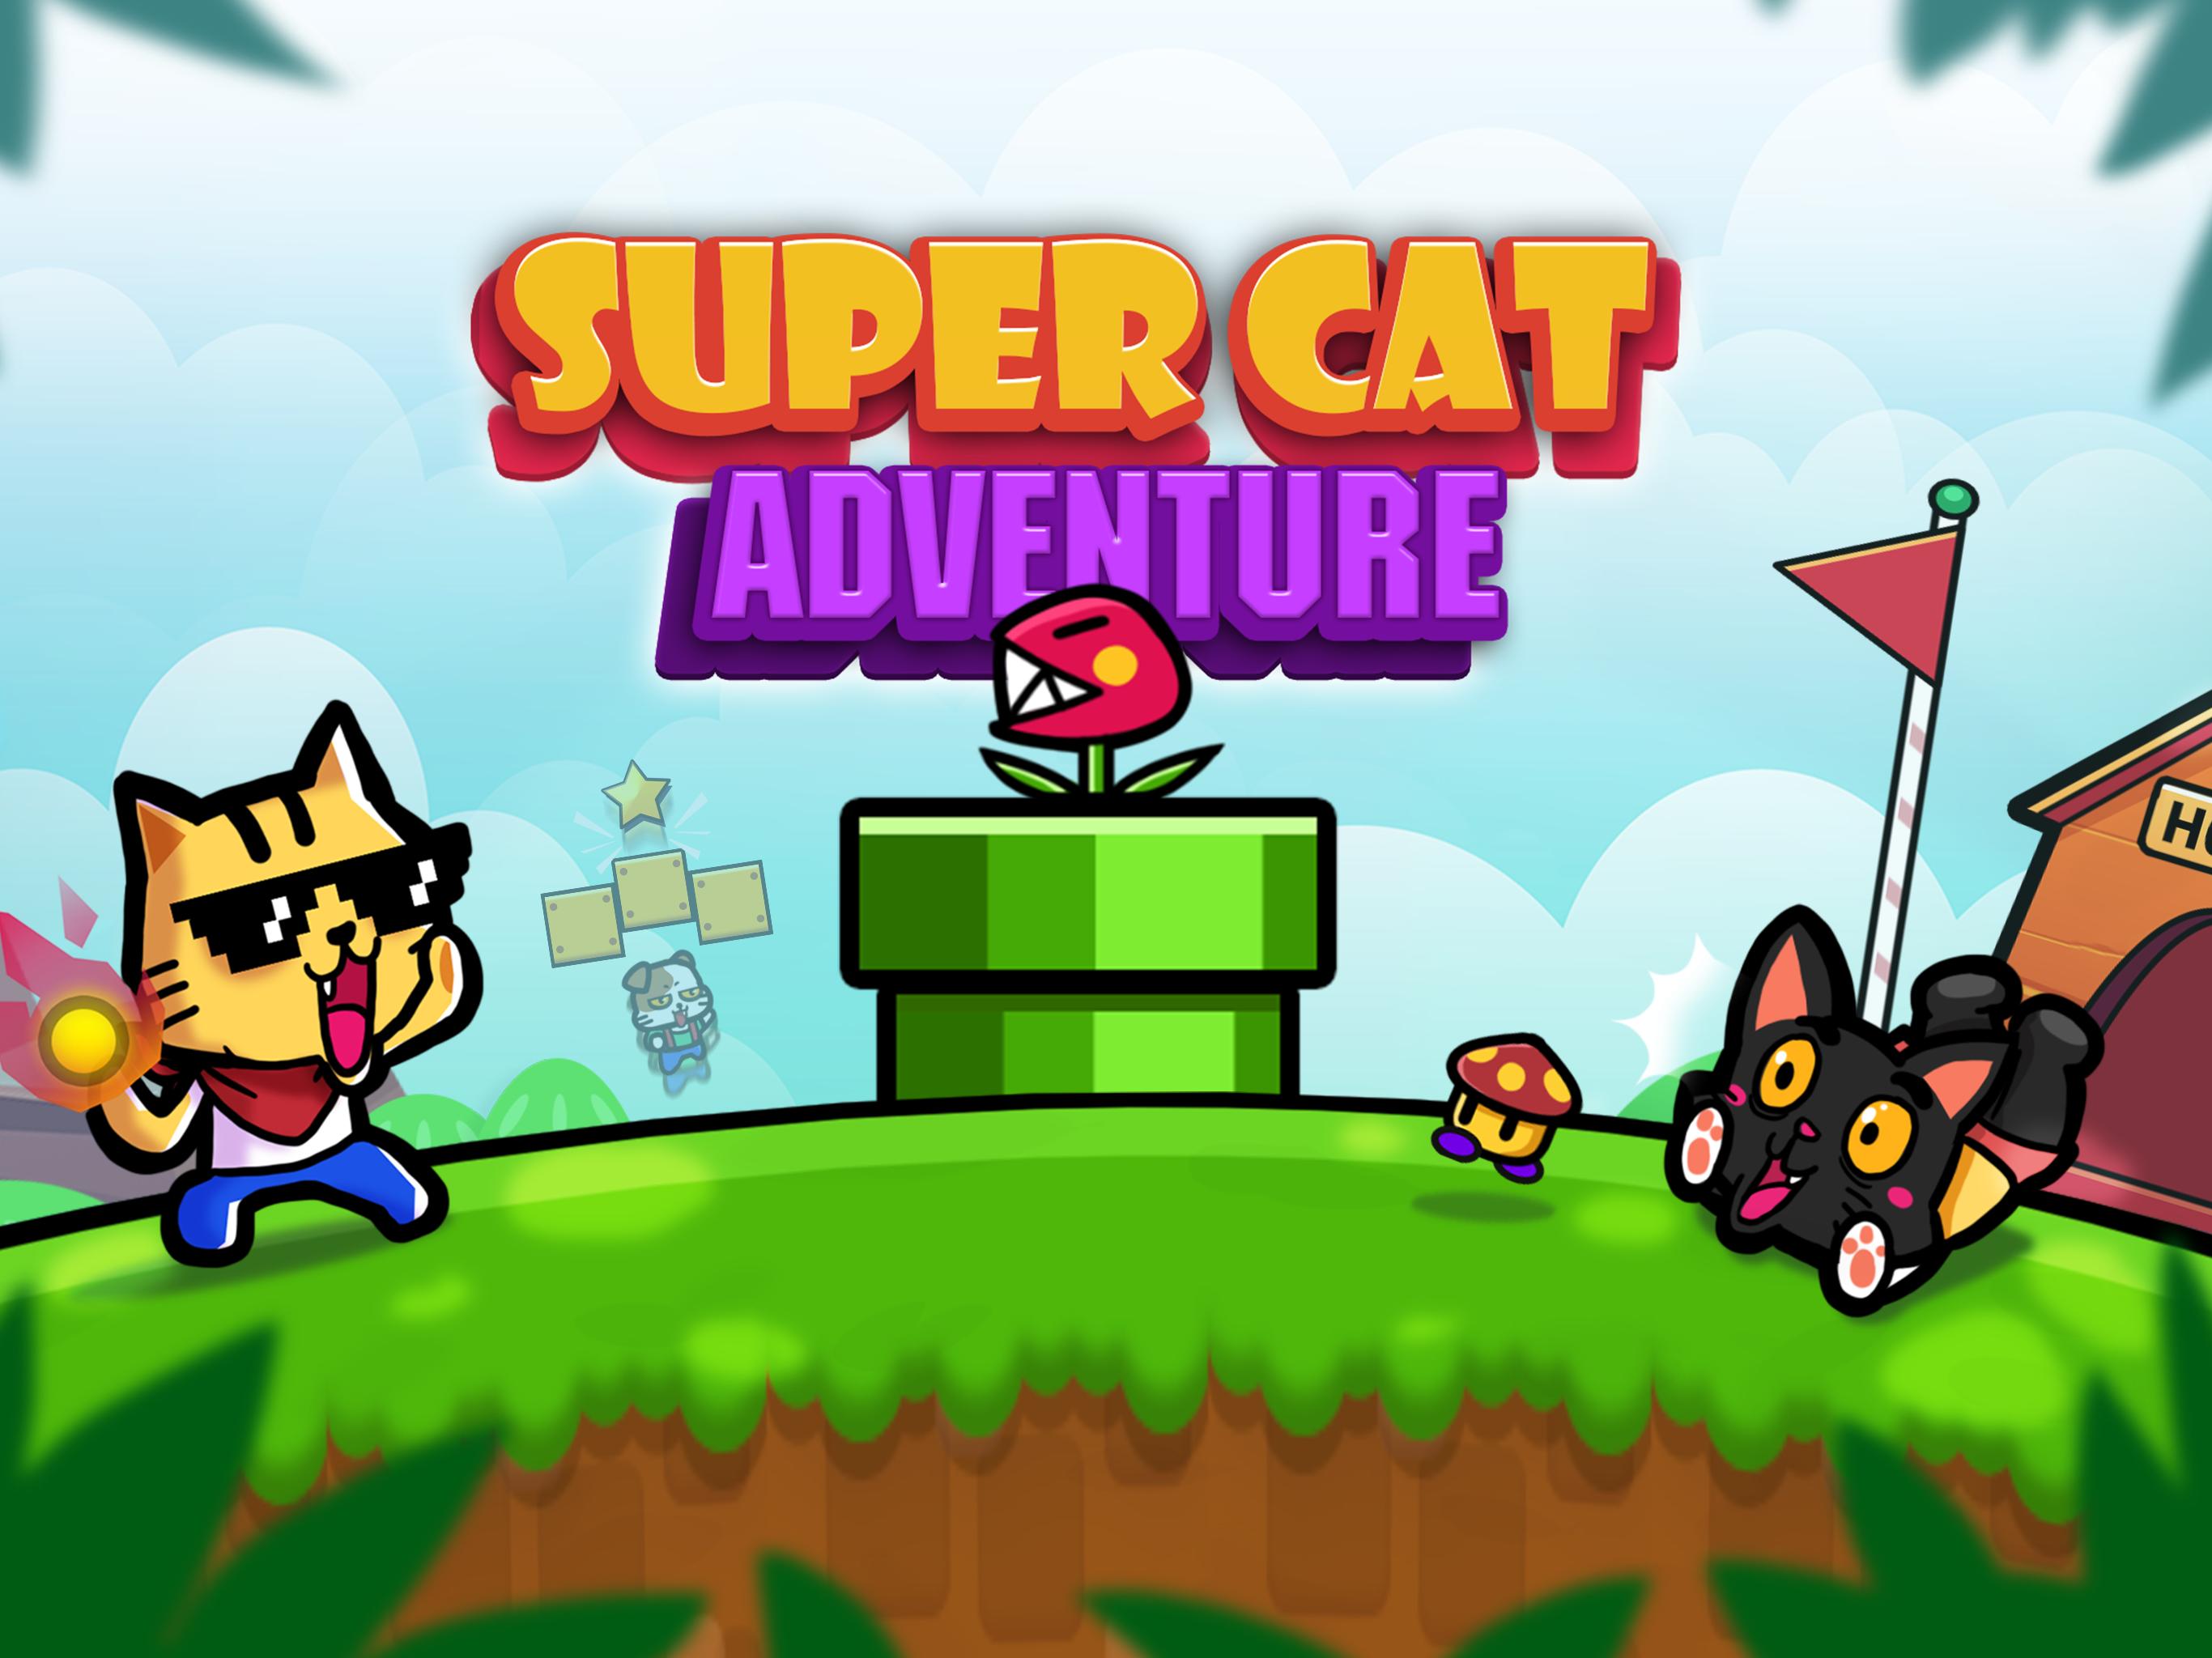 Action cat. Cat Adventure игра. Супер Кэт. Игра супер Кэт робзи. Adventure Cat игра видео.